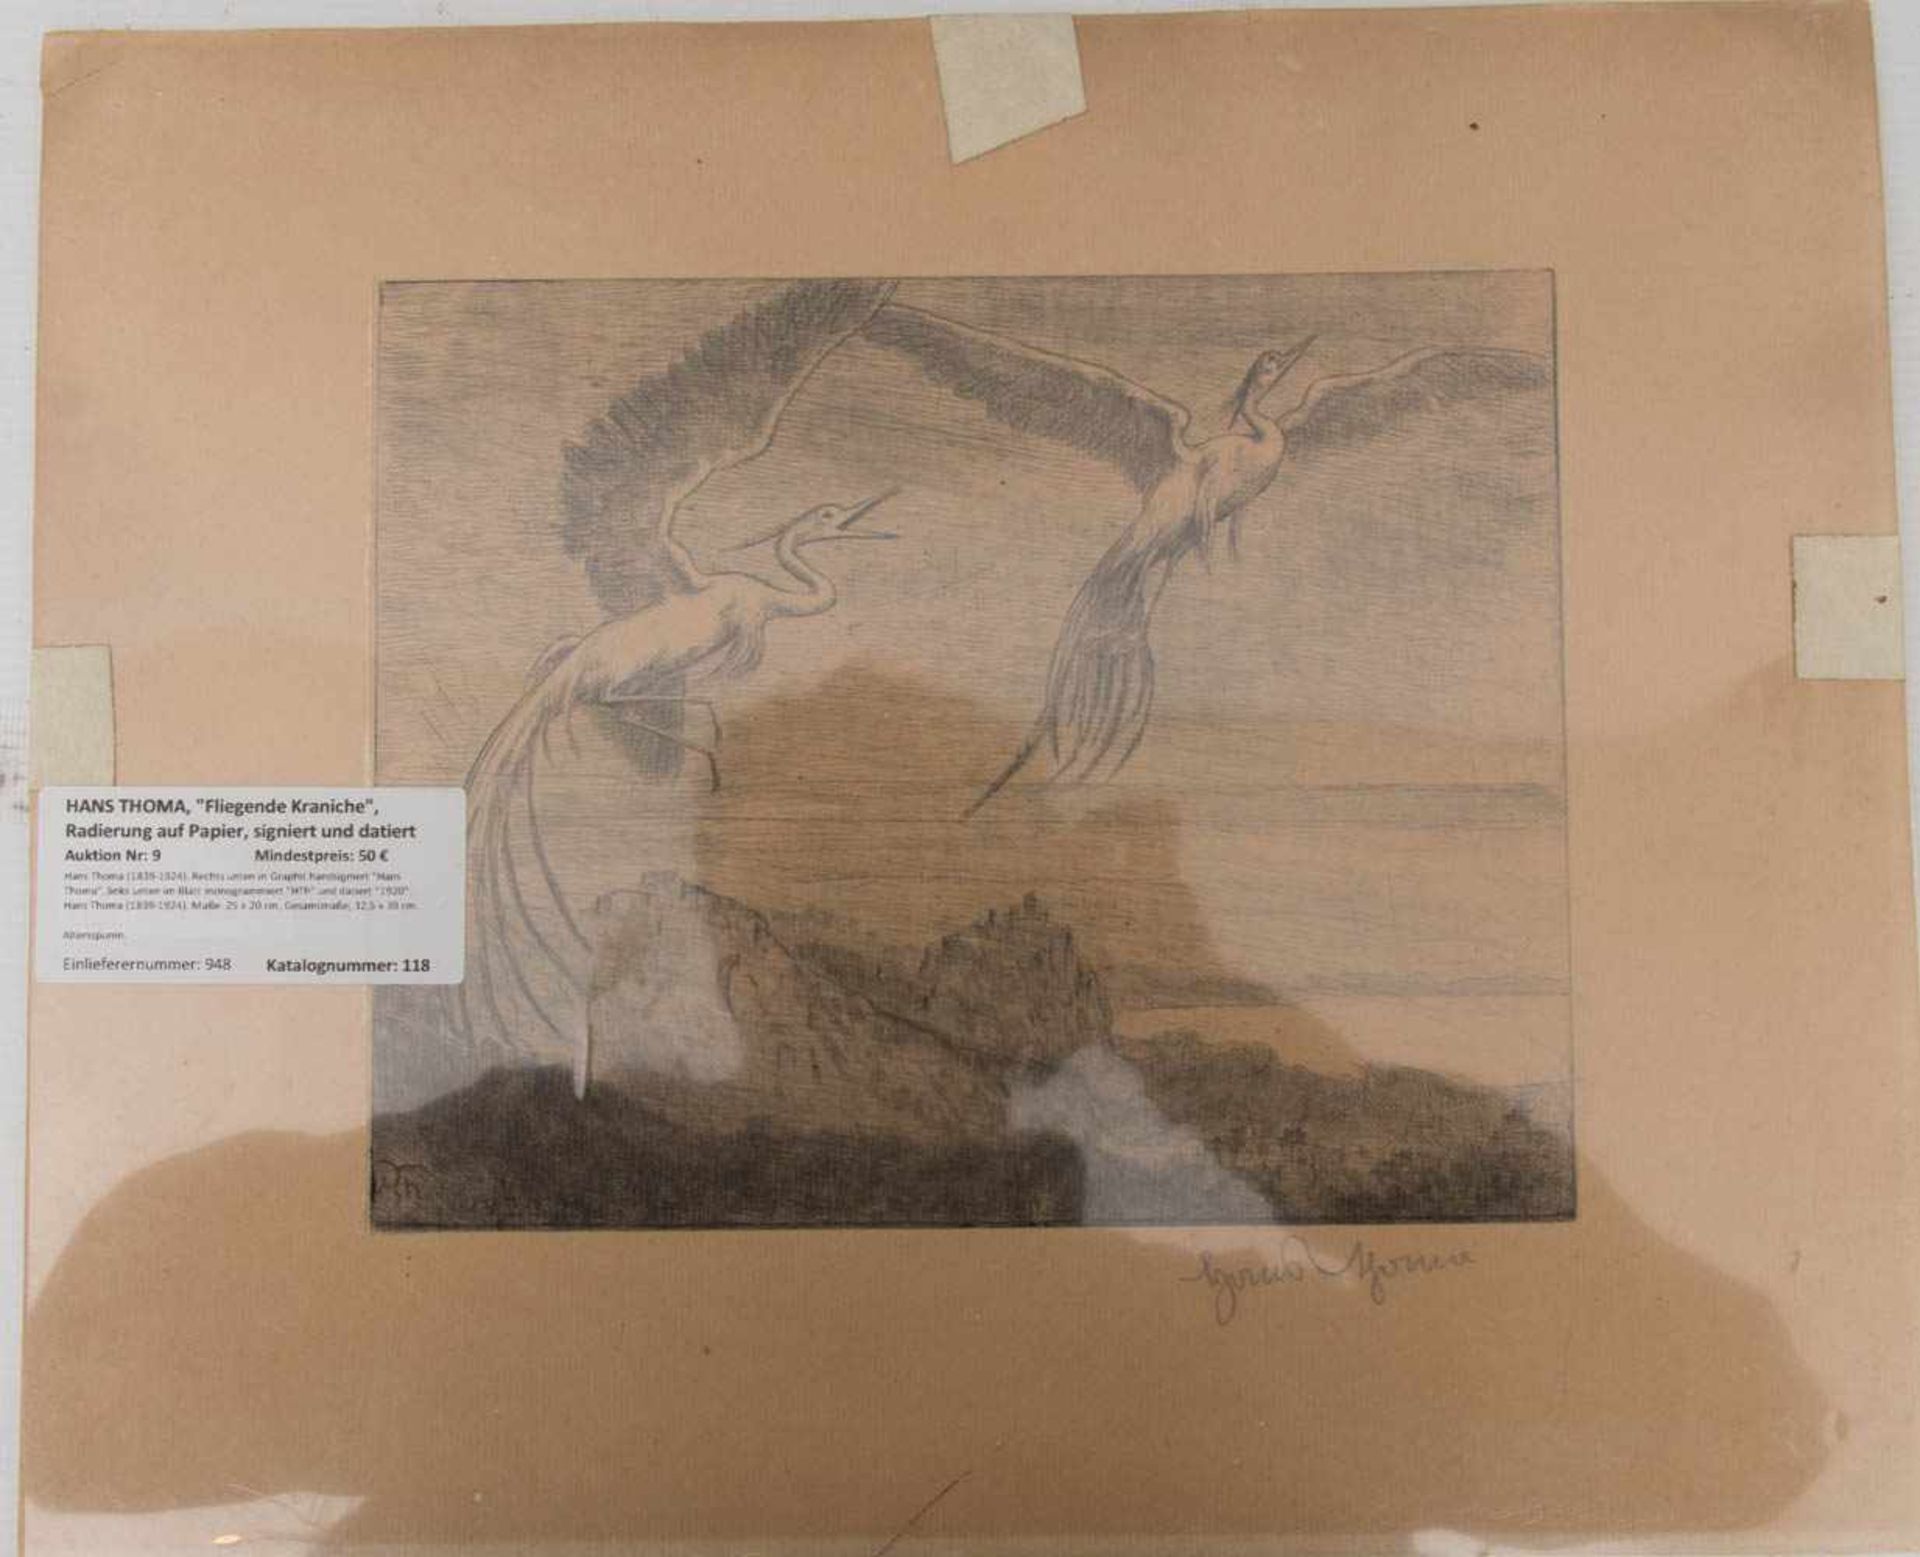 HANS THOMA, "Fliegende Kraniche", Radierung auf Papier, signiert und datiertHans Thoma (1839-